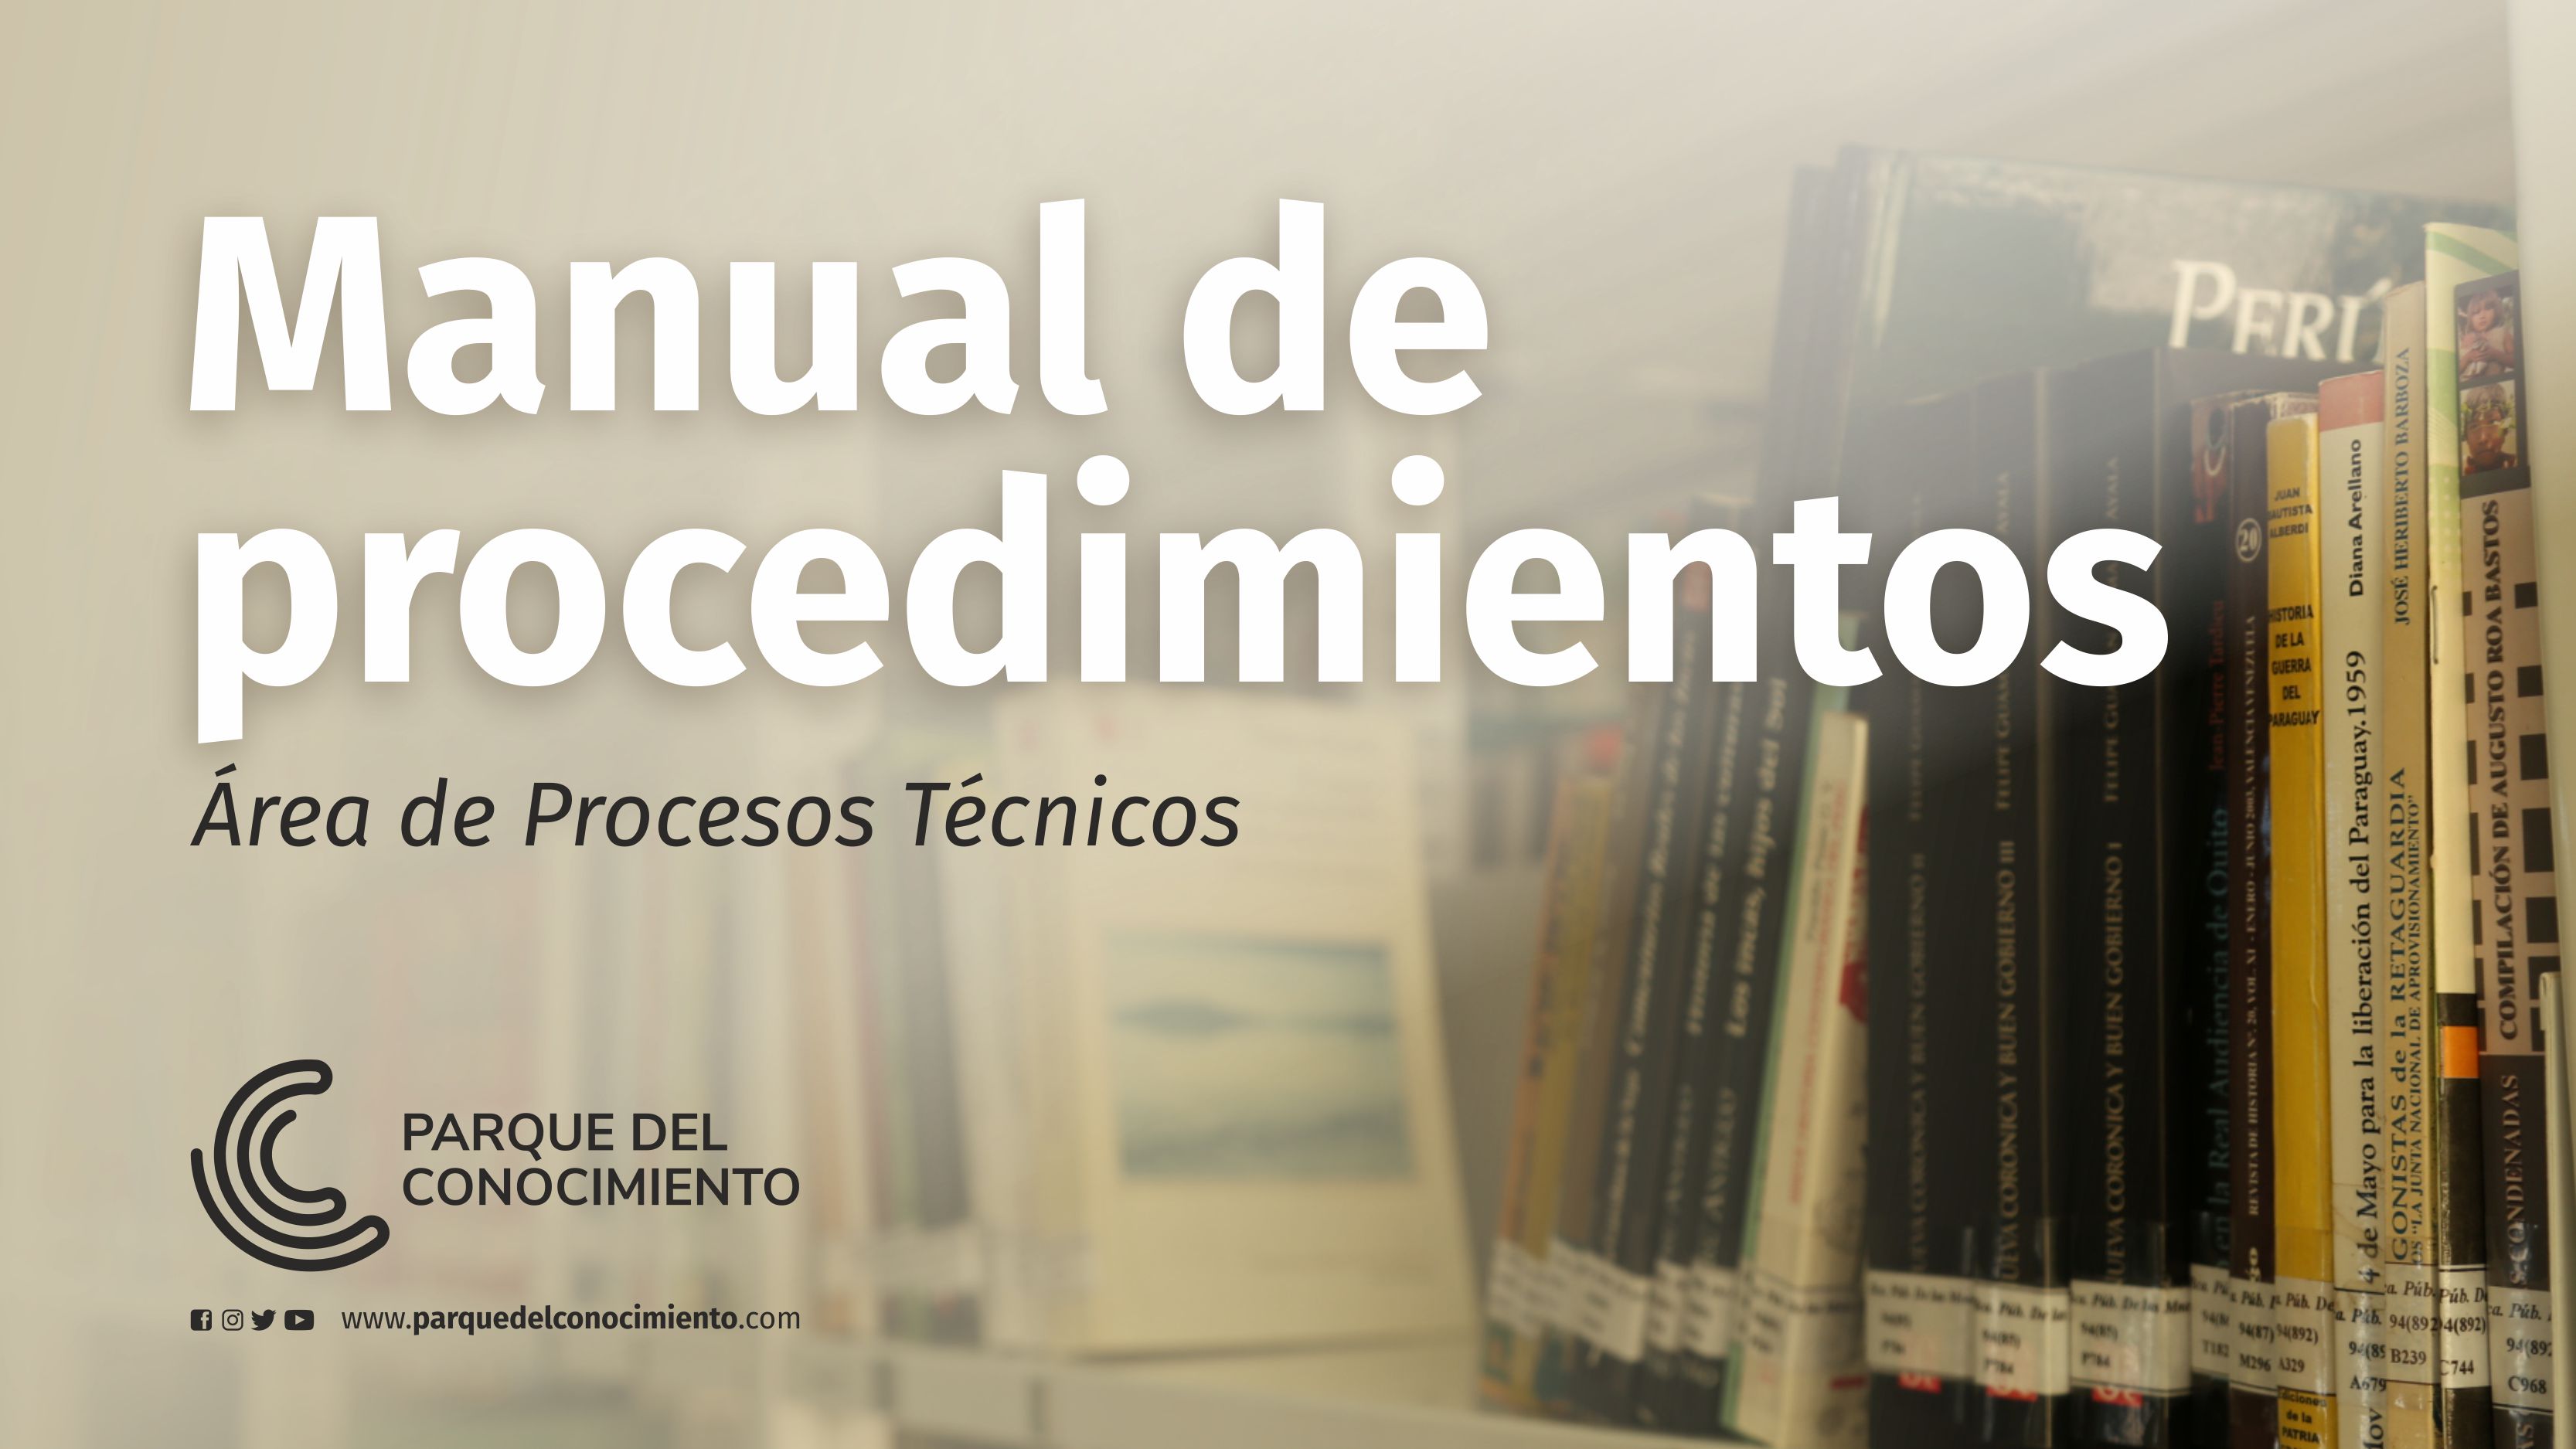 Manual de procedimientos para los procesos técnicos de la Biblioteca Pública de las Misiones 